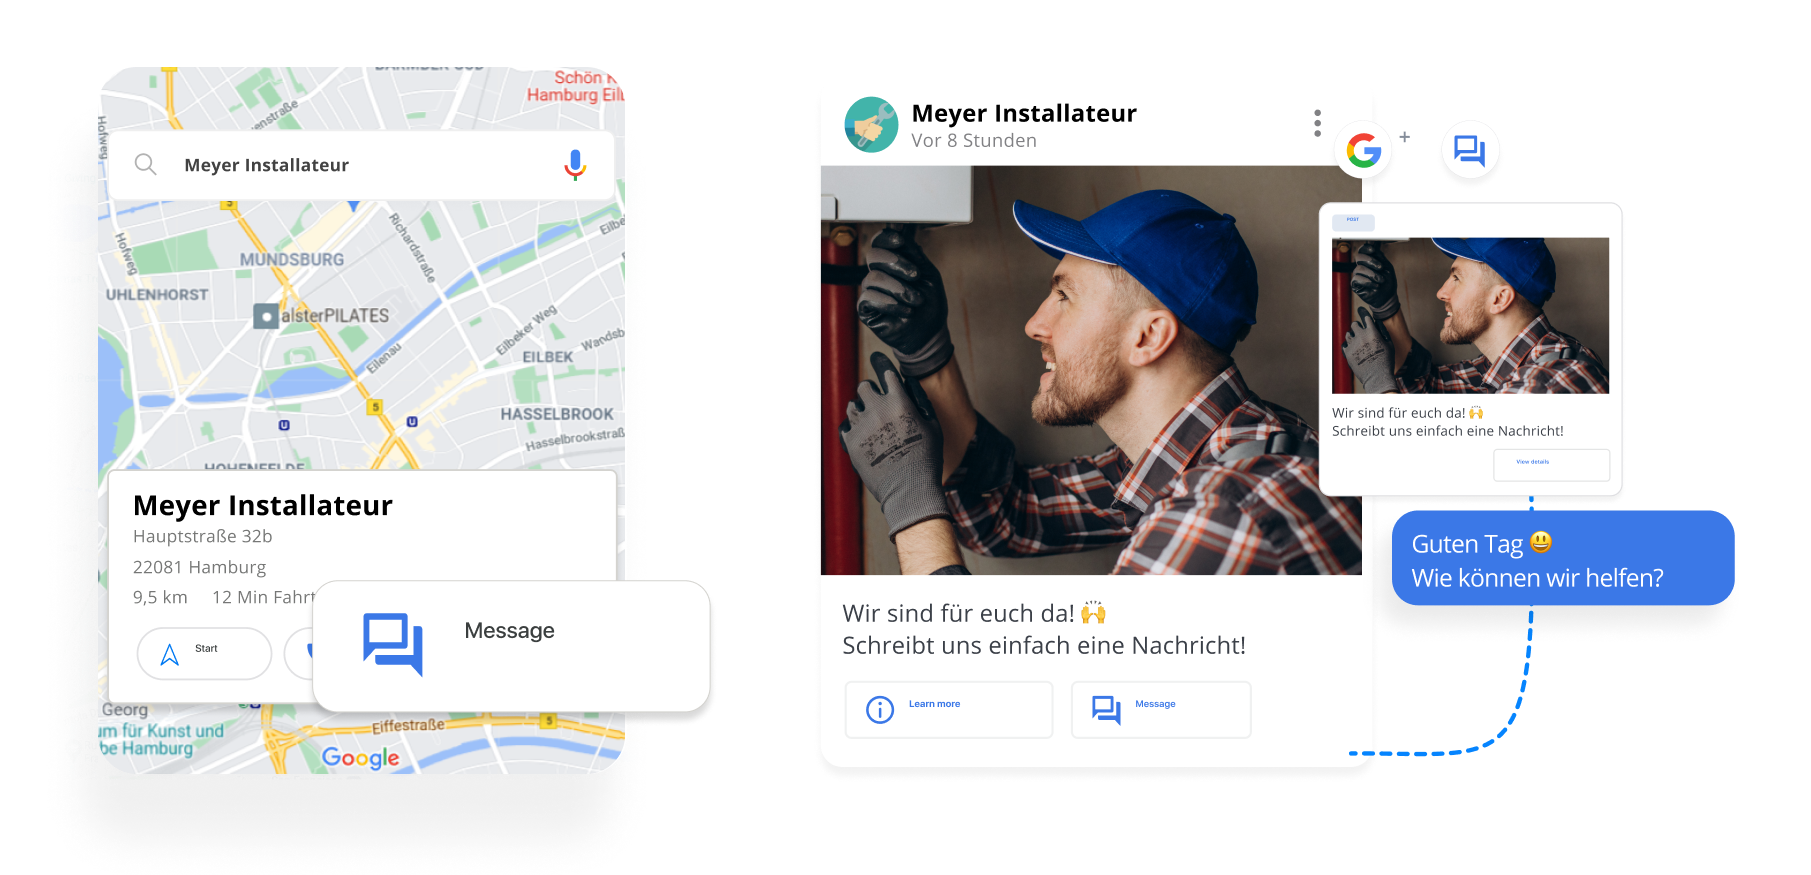 Lokale Anbieter werden oft über Google Maps gefunden und sollten auch hier kontaktiert werden können. Mit ChatWerk klappt das.